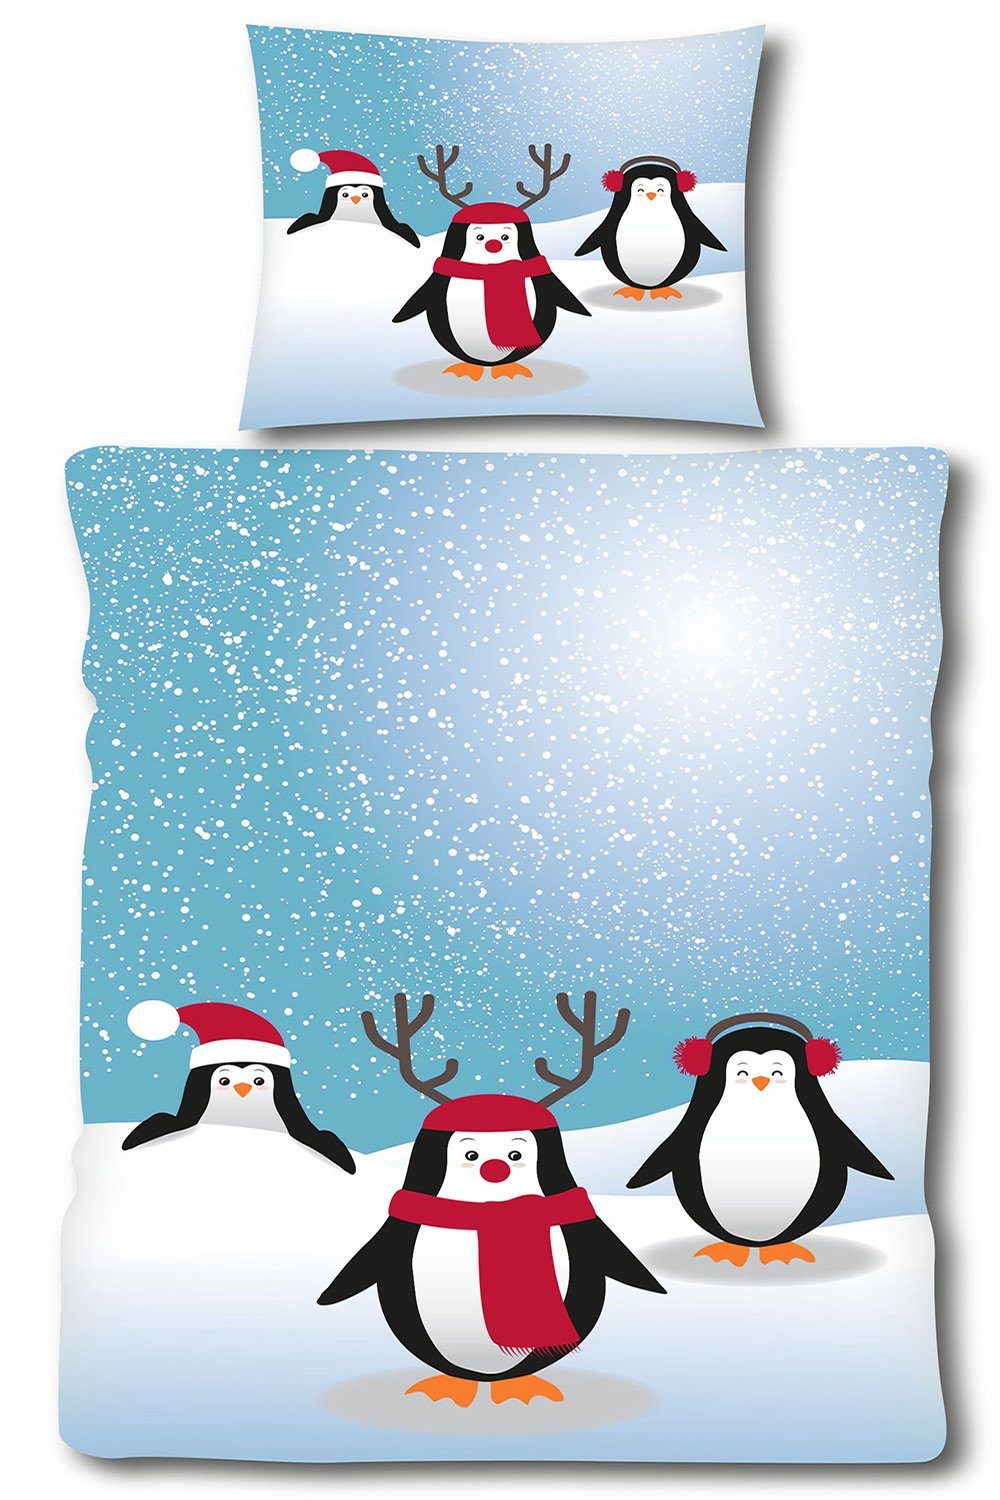 Bettwäsche Fleece Winter Bettwäsche, 135 x 200 + 80x80cm, Motiv: Pinguin,  KH-Haushaltshandel, Fleece, flauschig weiche warme Winterbettwäsche